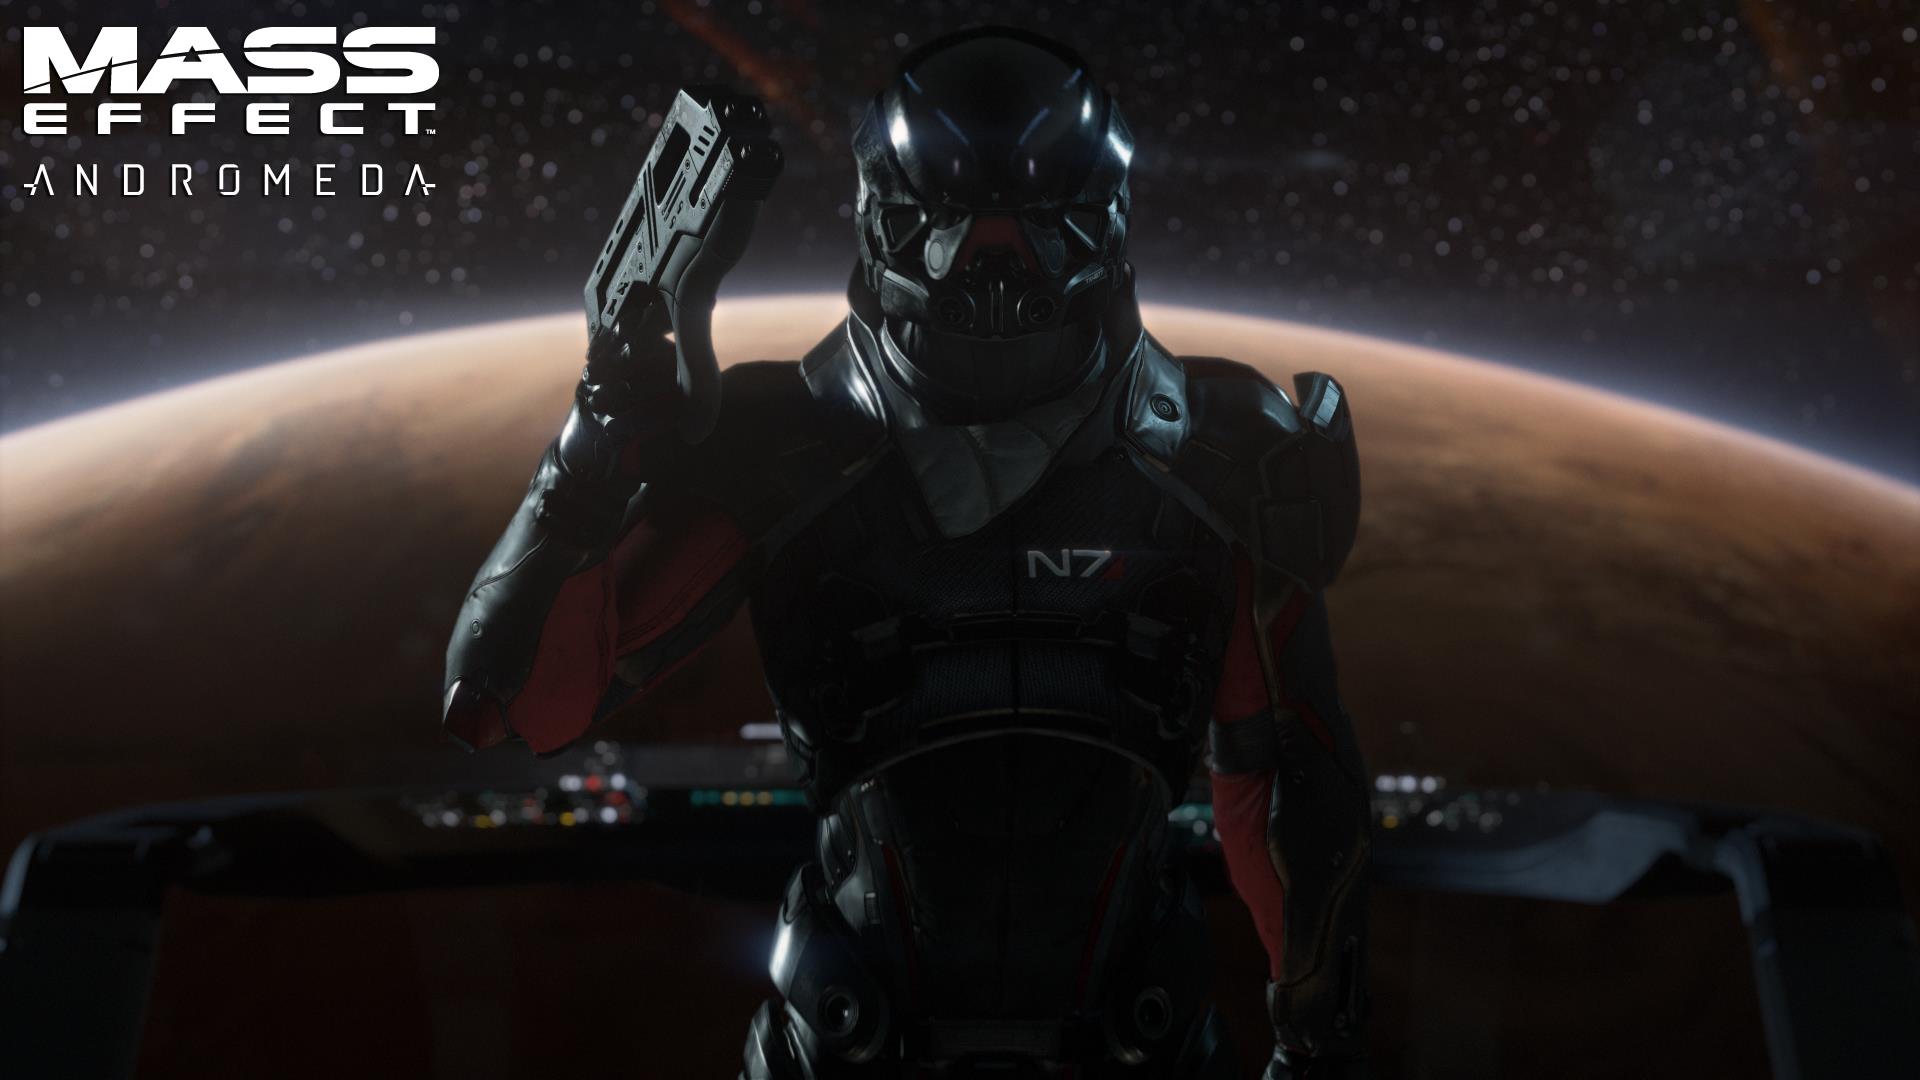 เผยรูปกล่องและข้อมูล Mass Effect: Andromeda จะมีโหมด Multiplayer พร้อมปล่อย Trailer ใหม่